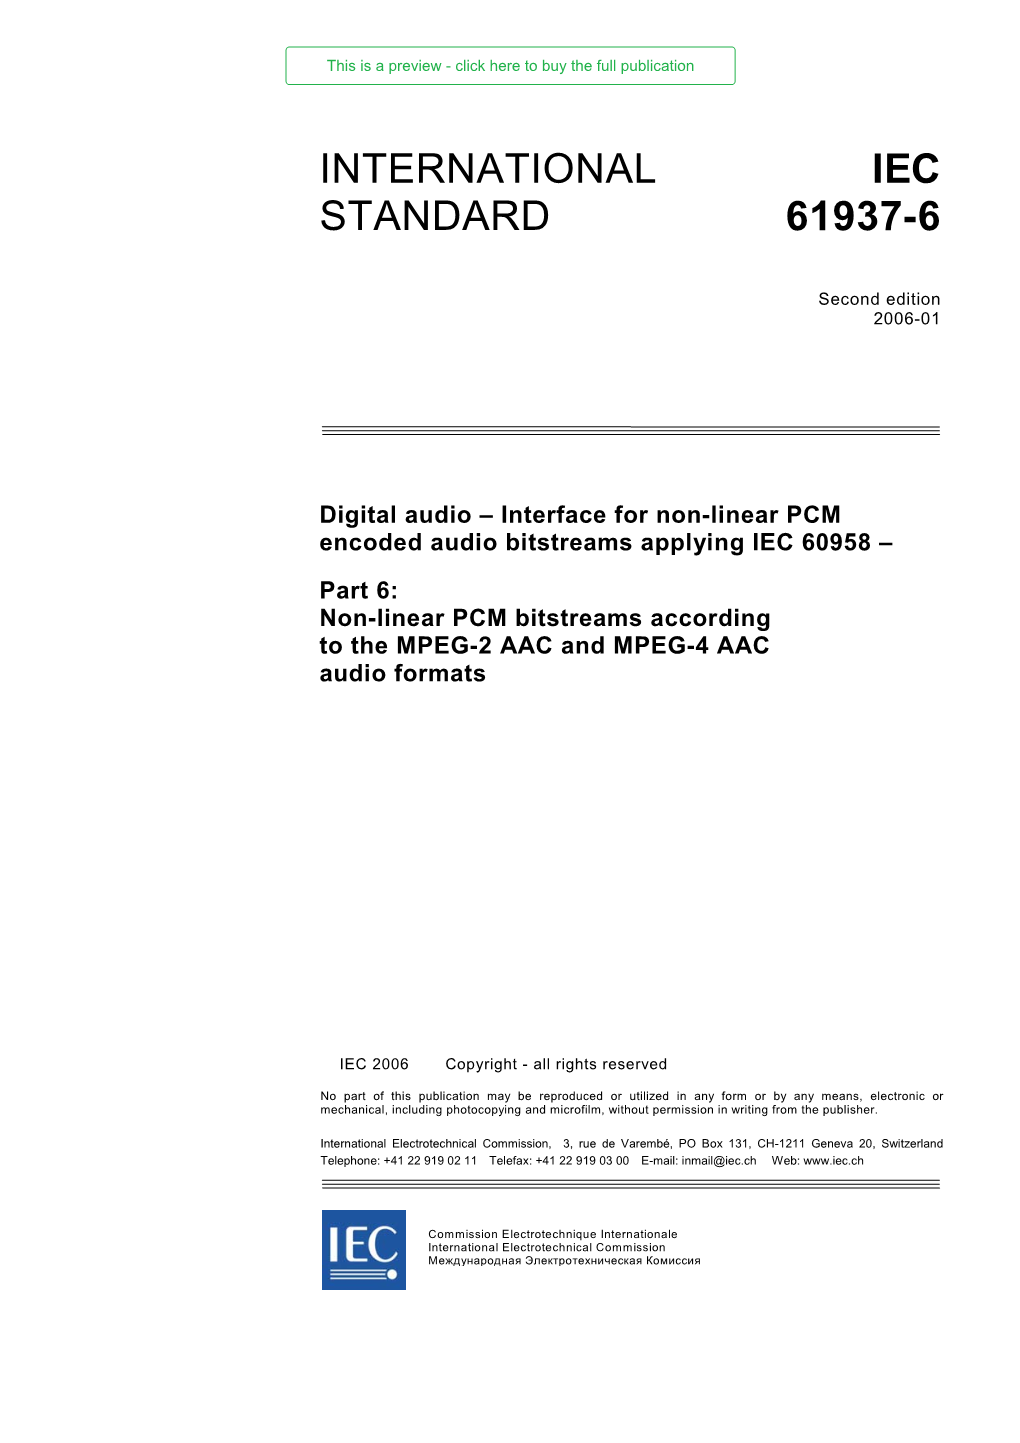 International Standard Iec 61937-6